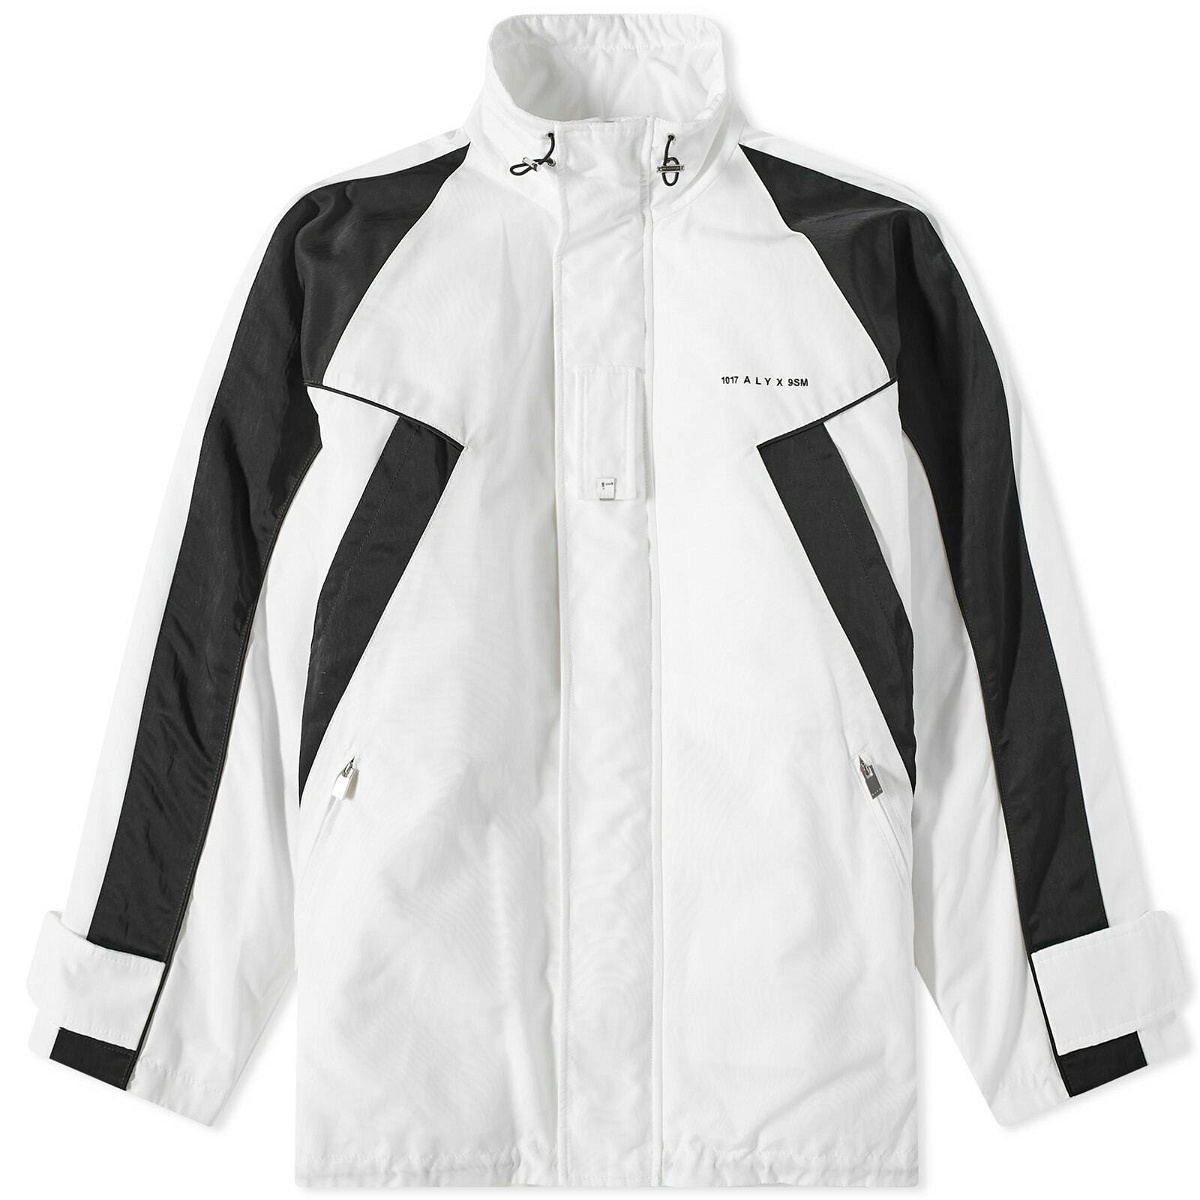 Photo: 1017 ALYX 9SM Men's Sail Lightweight Jacket in White/Black